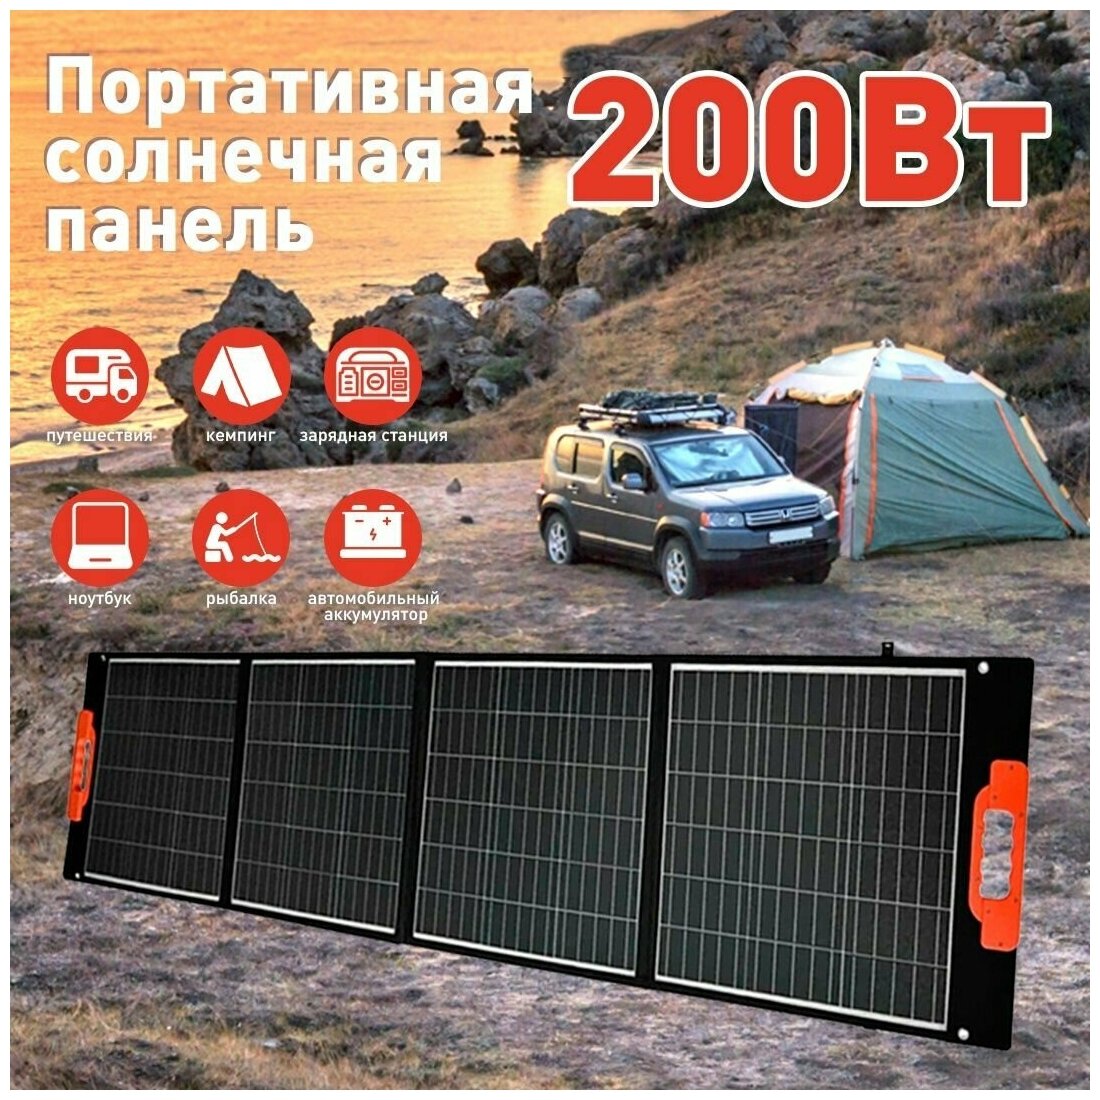 Портативная солнечная панель мощность WATTICO 200 Вт для питания, зарядки устройств от солнца